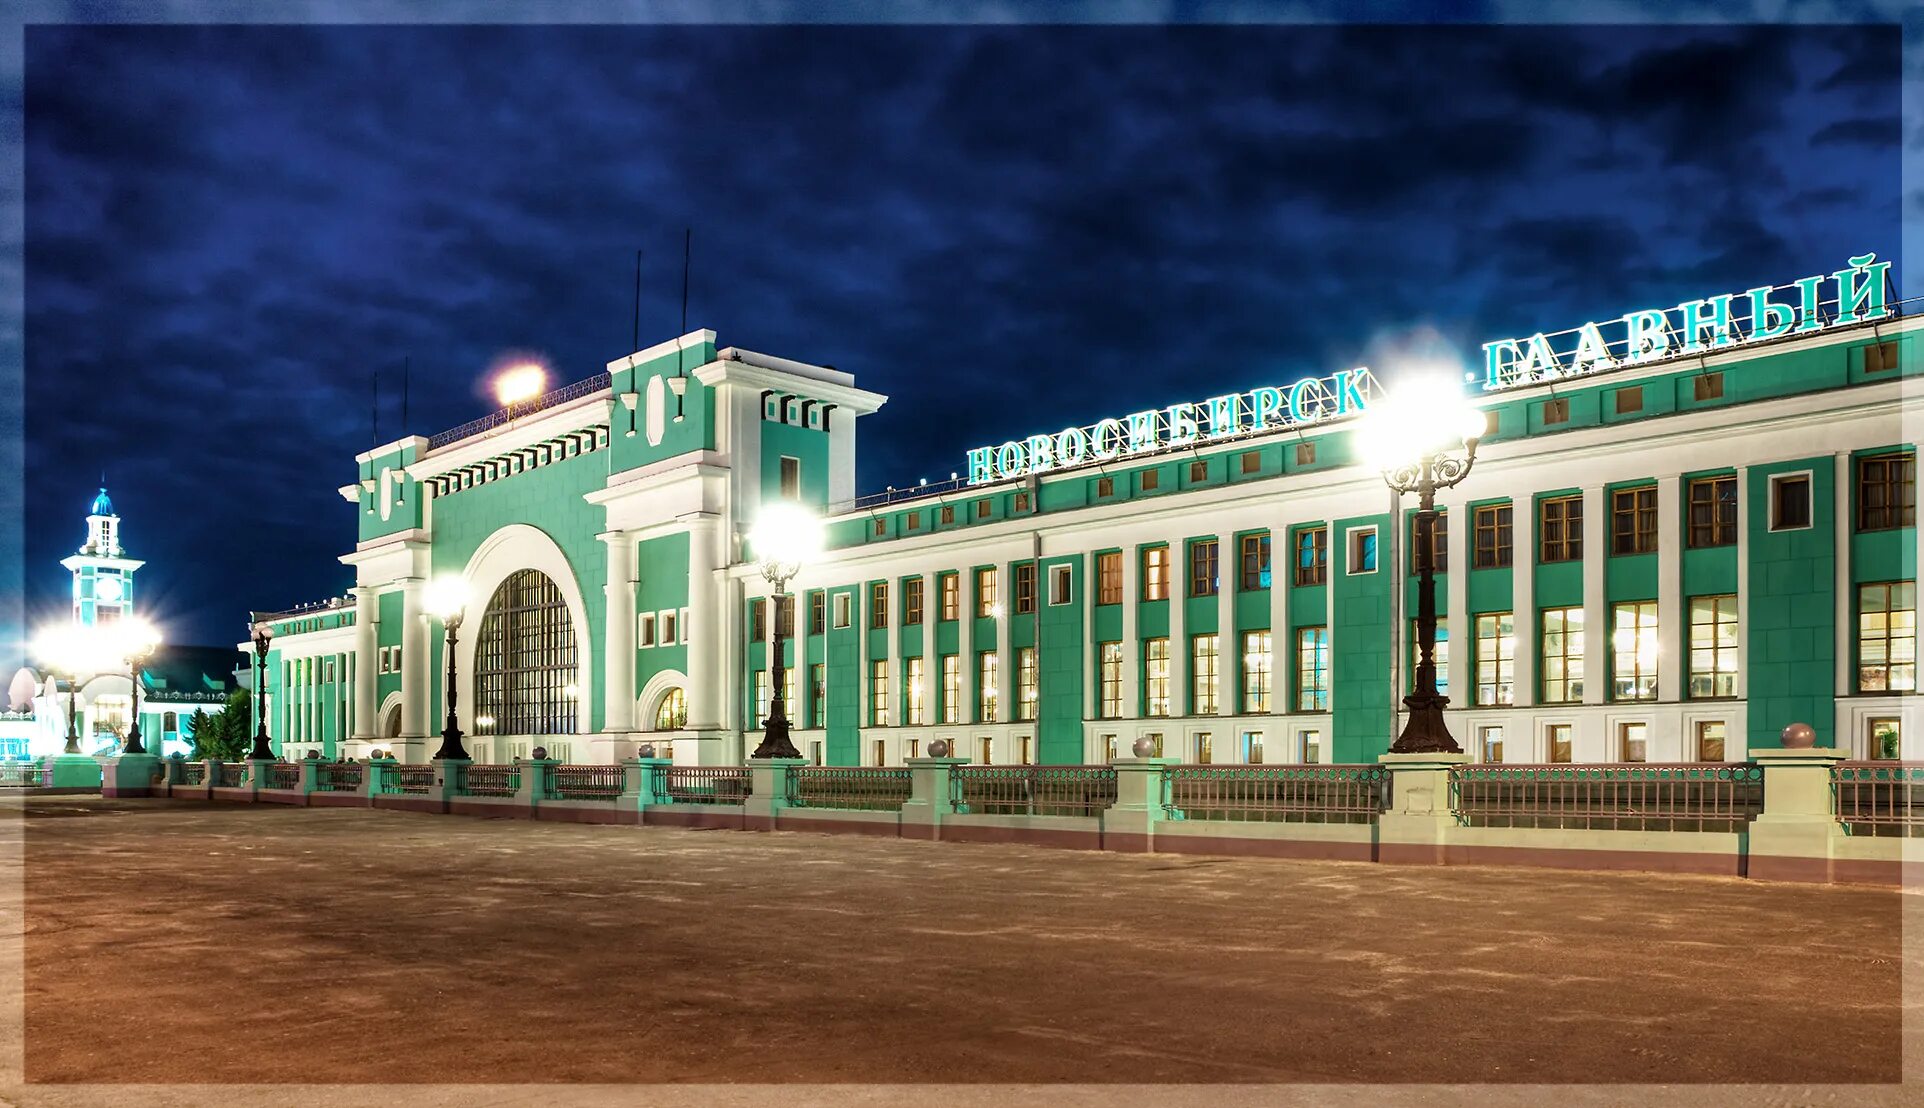 Новосибирский главный вокзал главный Новосибирск. Вокзал железнодорожной станции Новосибирск-главный. Железнодорожный вокзал Новосибирск главный. Новосибирск ЖД вокзал г Новосибирск.